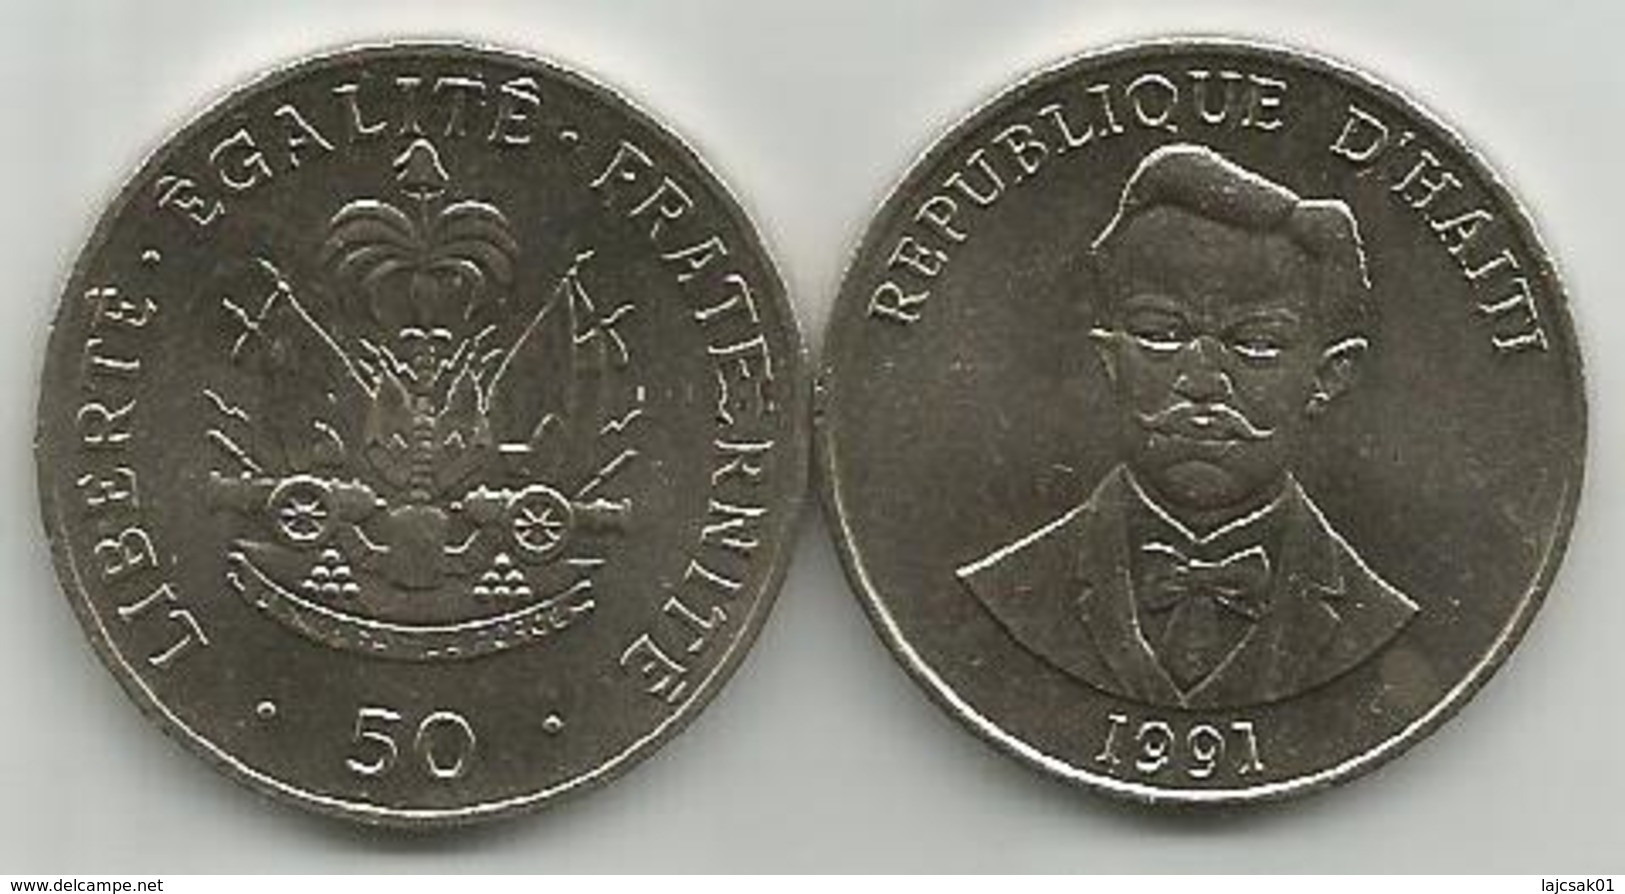 Haiti 50 Centimes 1991. High Grade - Haiti